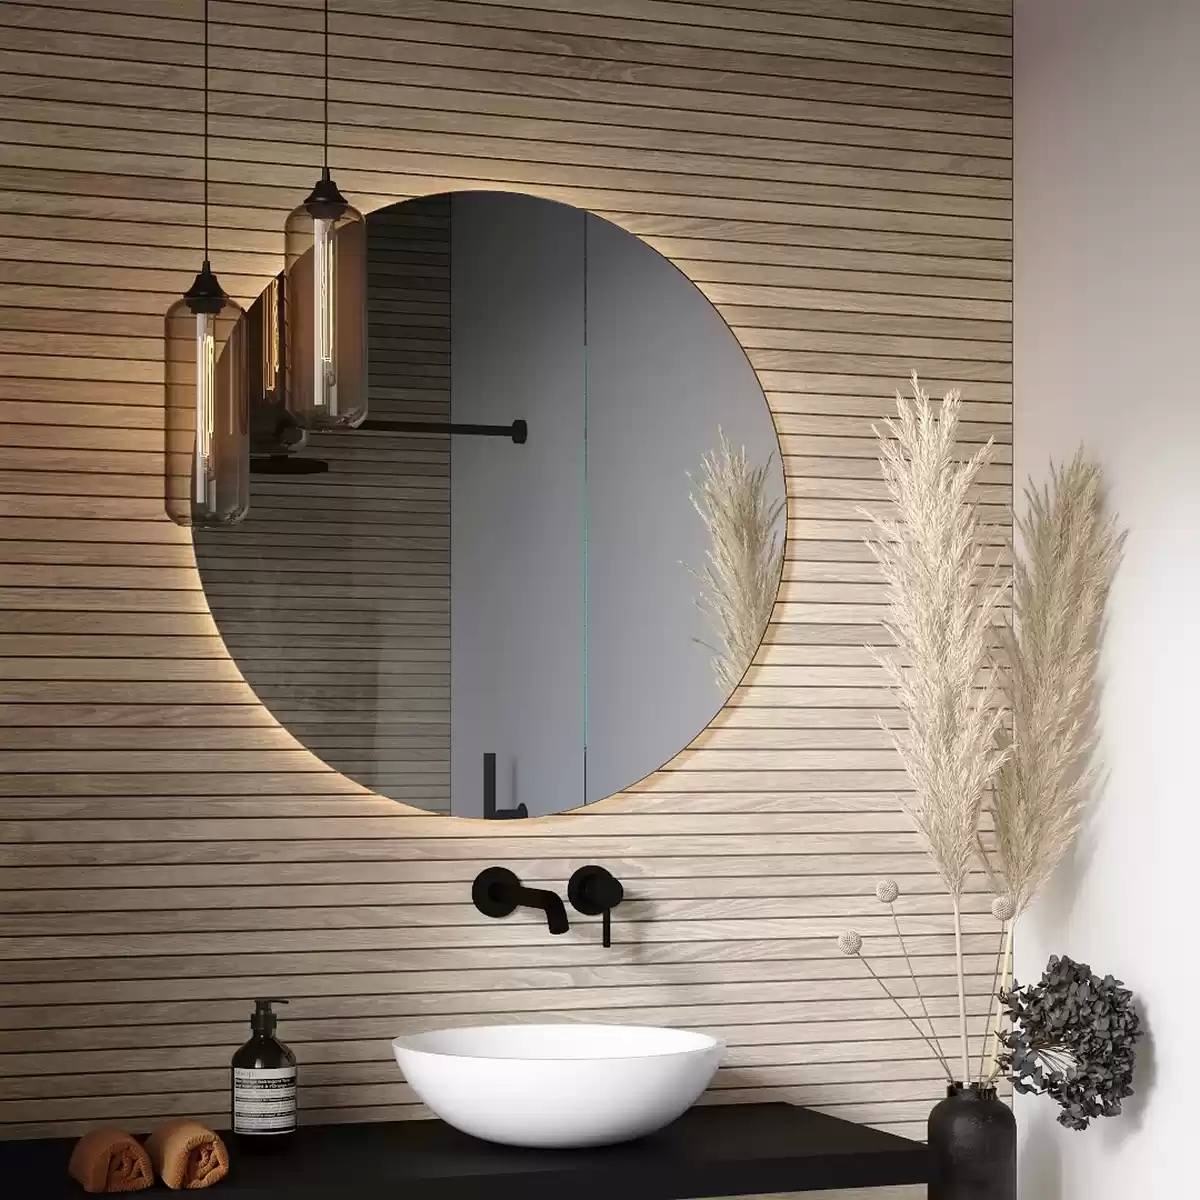 Rahmenloser Bad-Spiegel Nach Maß, Mit Ambient-Beleuchtung, Kreisförmi throughout Badezimmer Spiegel Beleuchtet